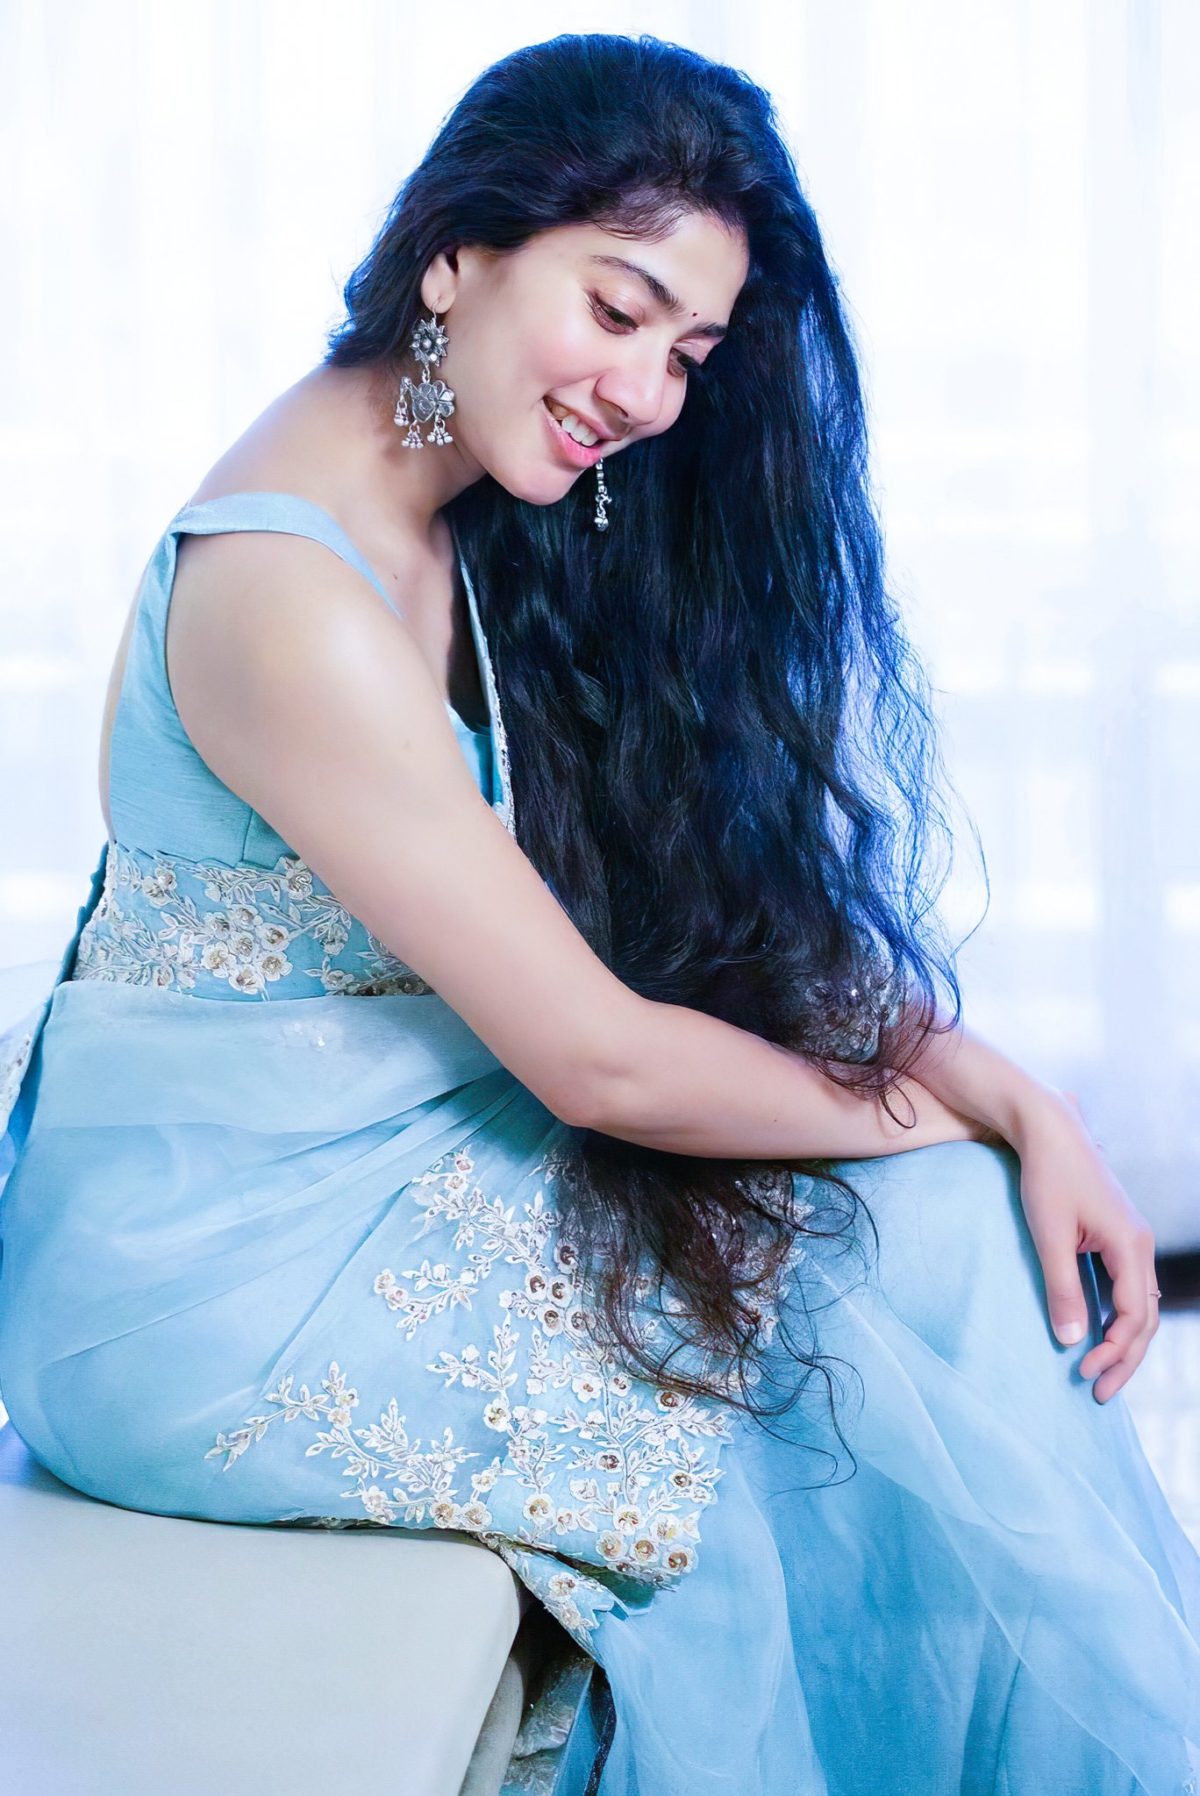 Sai Pallavi Steals The Show In An Elegant Sky Blue Saree